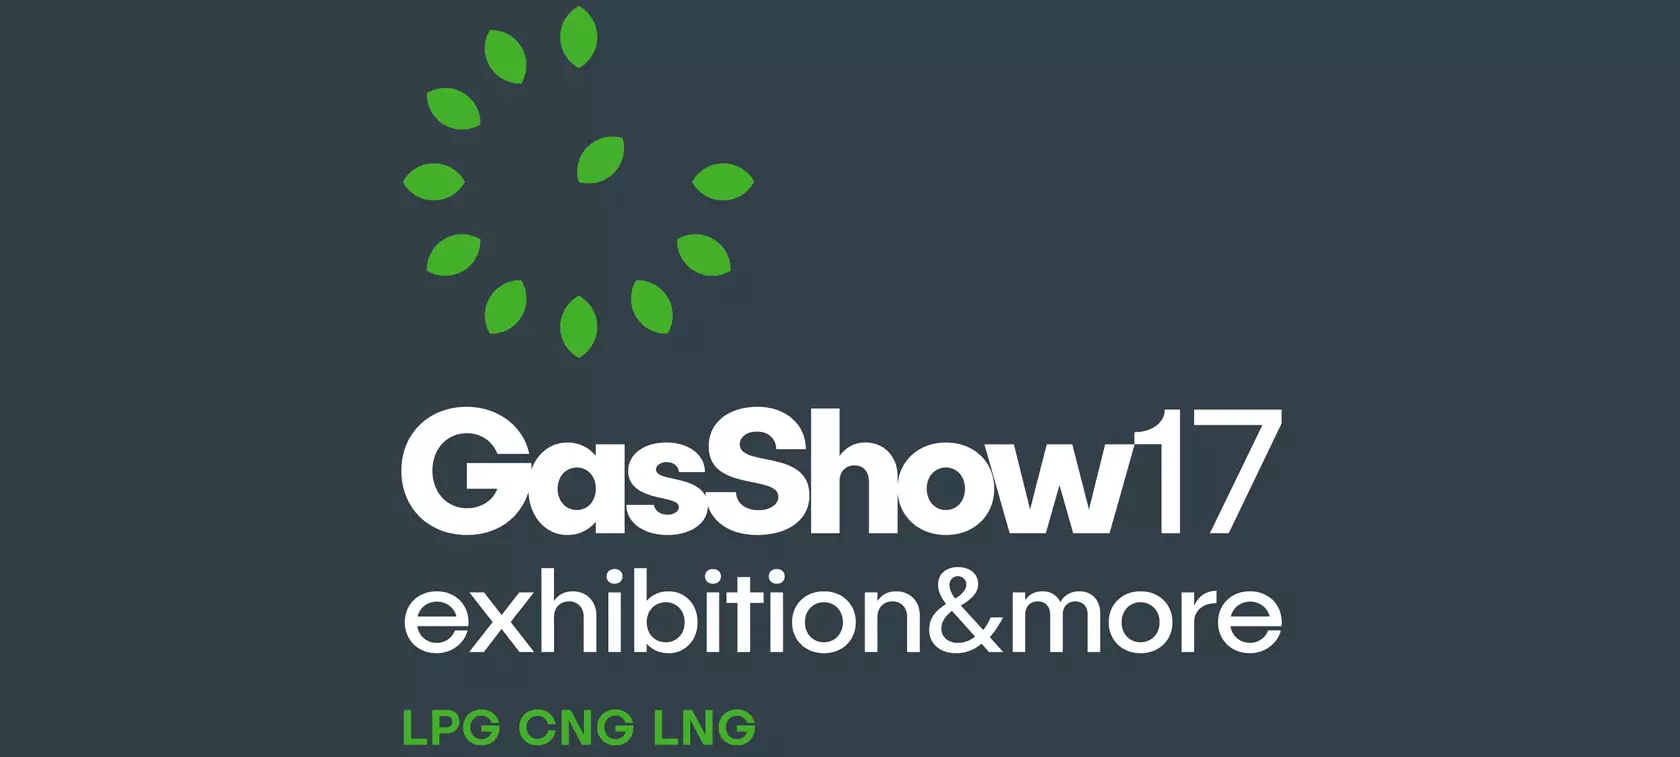 GasShow 2017 - już 60 zgłoszonych wystawców